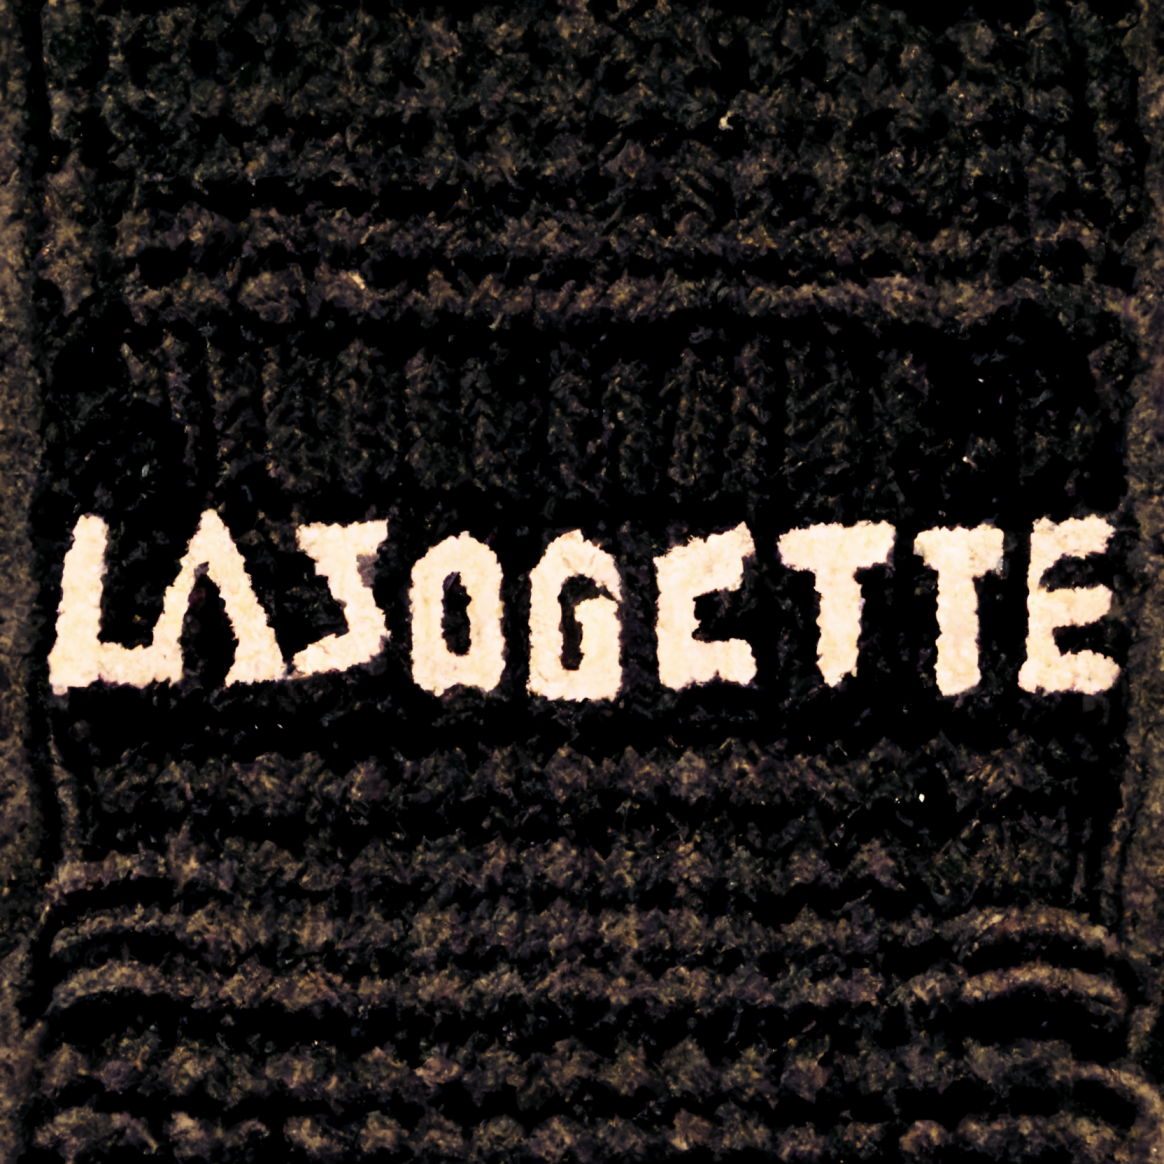 Lasogette